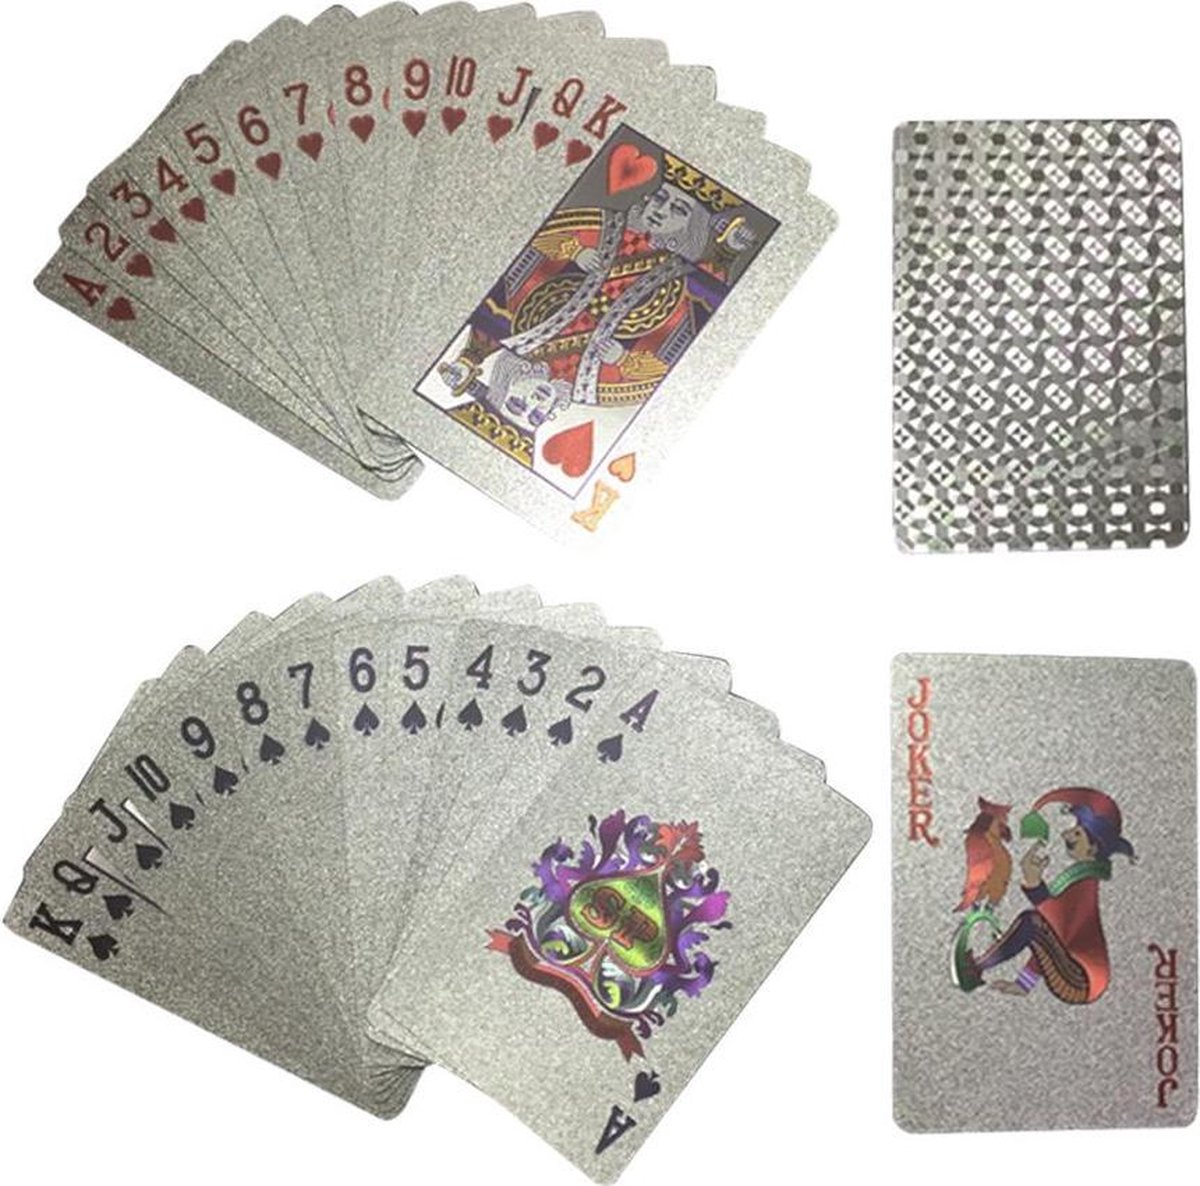 Jeu de cartes à jouer en plastique or 24K, 54 pièces/ensemble, jeu de Poker  magique